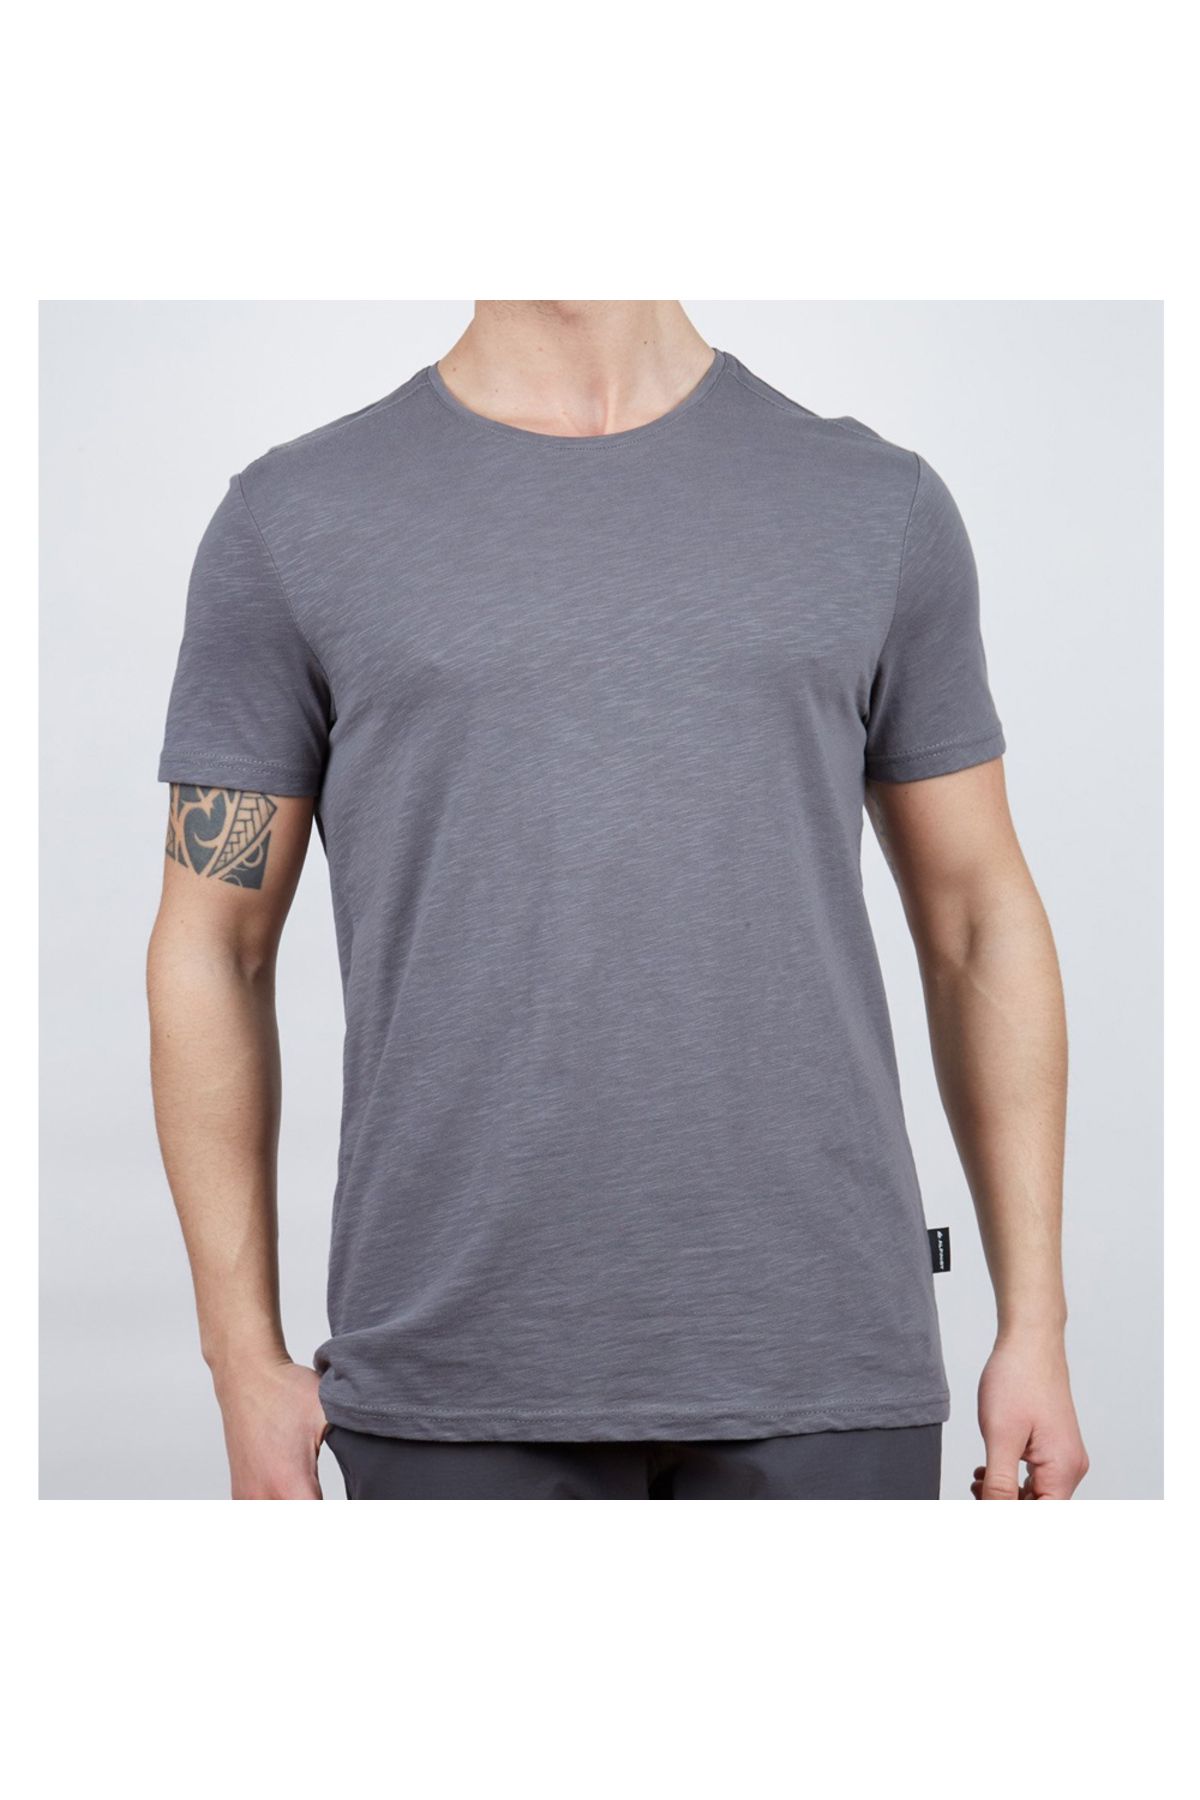 Alpinist Basic Erkek Pamuklu T-shirt Antrasit (600400)